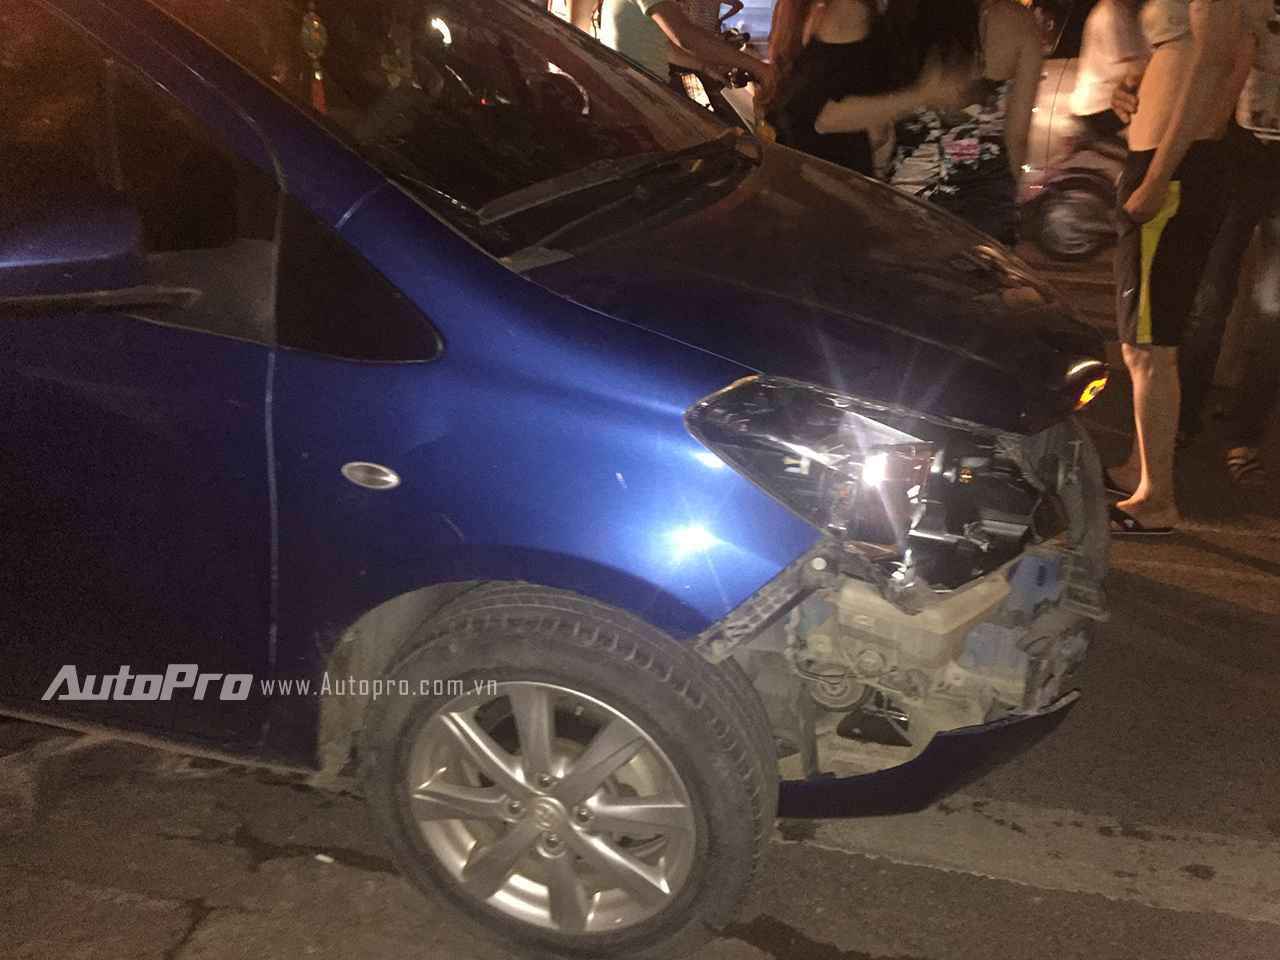 
Chiếc xe Toyota Yaris sau khi va chạm đã bị vỡ hoàn toàn phần đầu xe.
